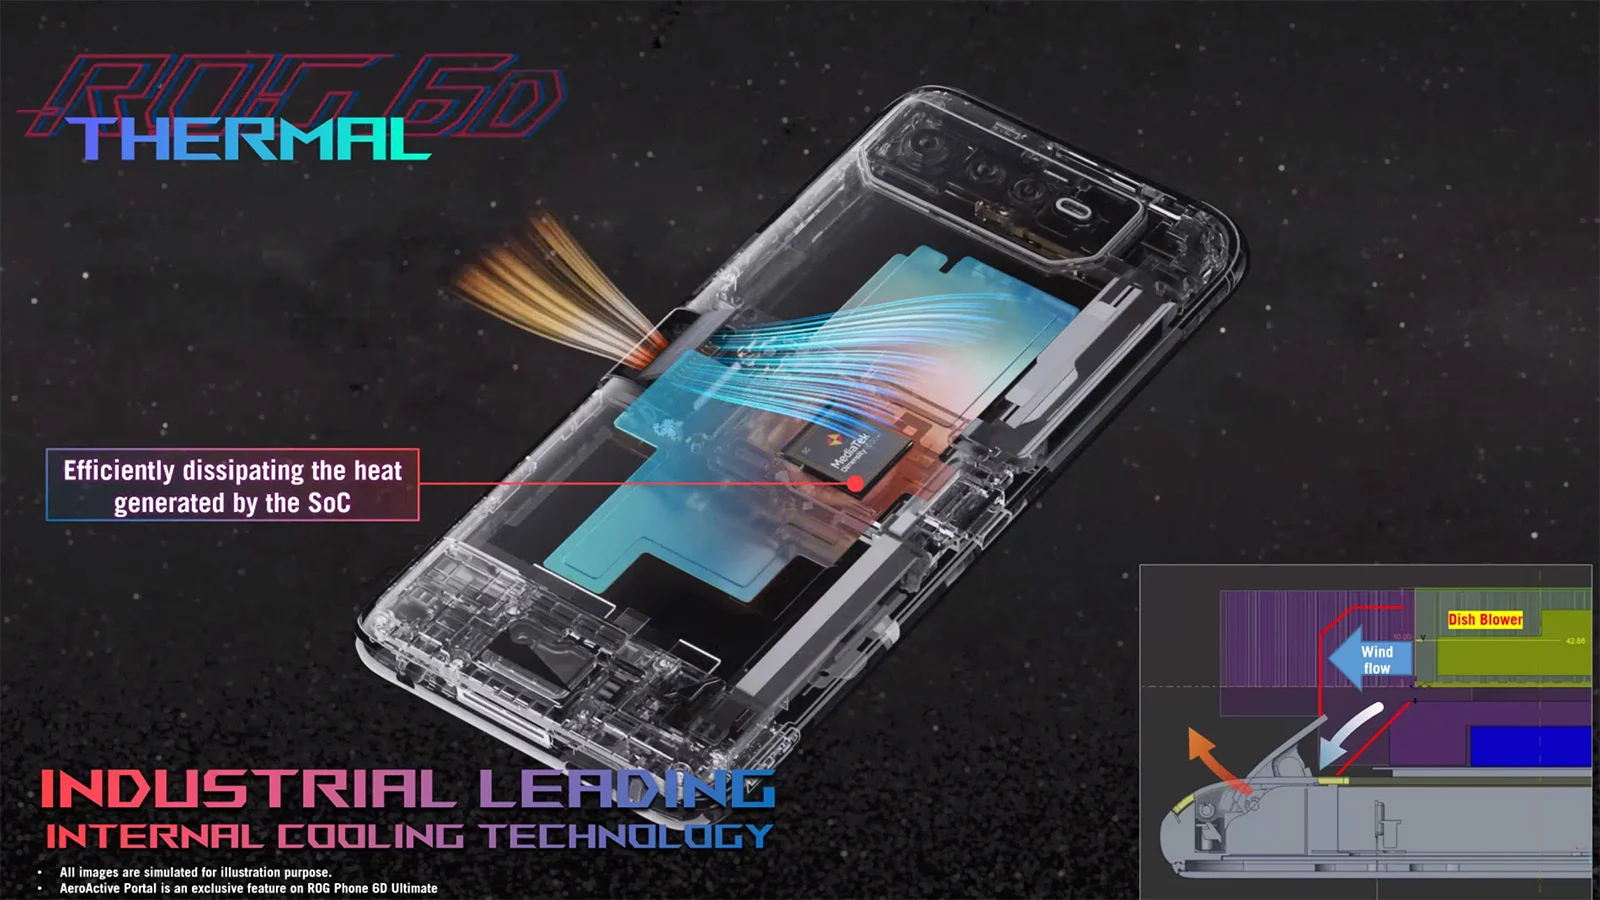 ROG Phone 6D Ultimate thermal design